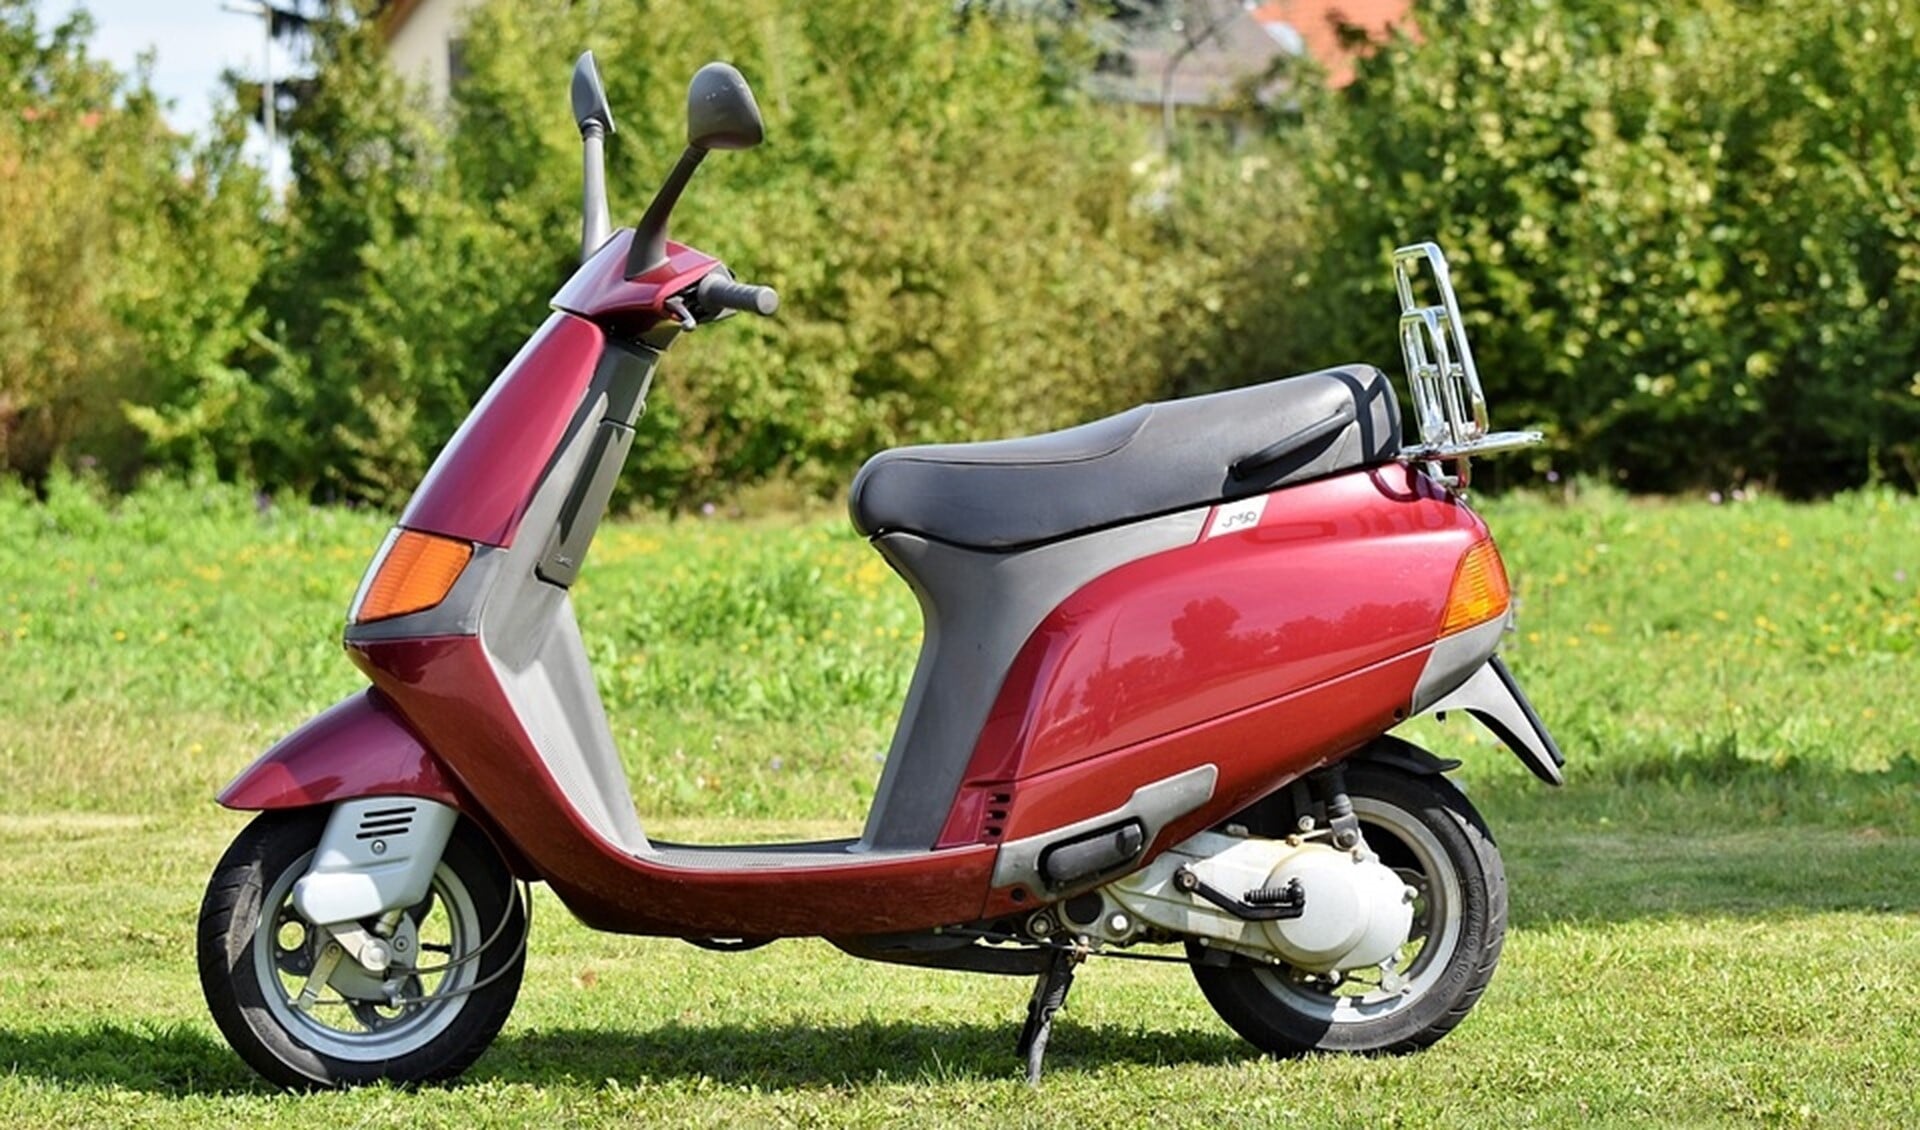 De Vespa van producent Piaggio is een dure scooter en erg gewild bij dieven